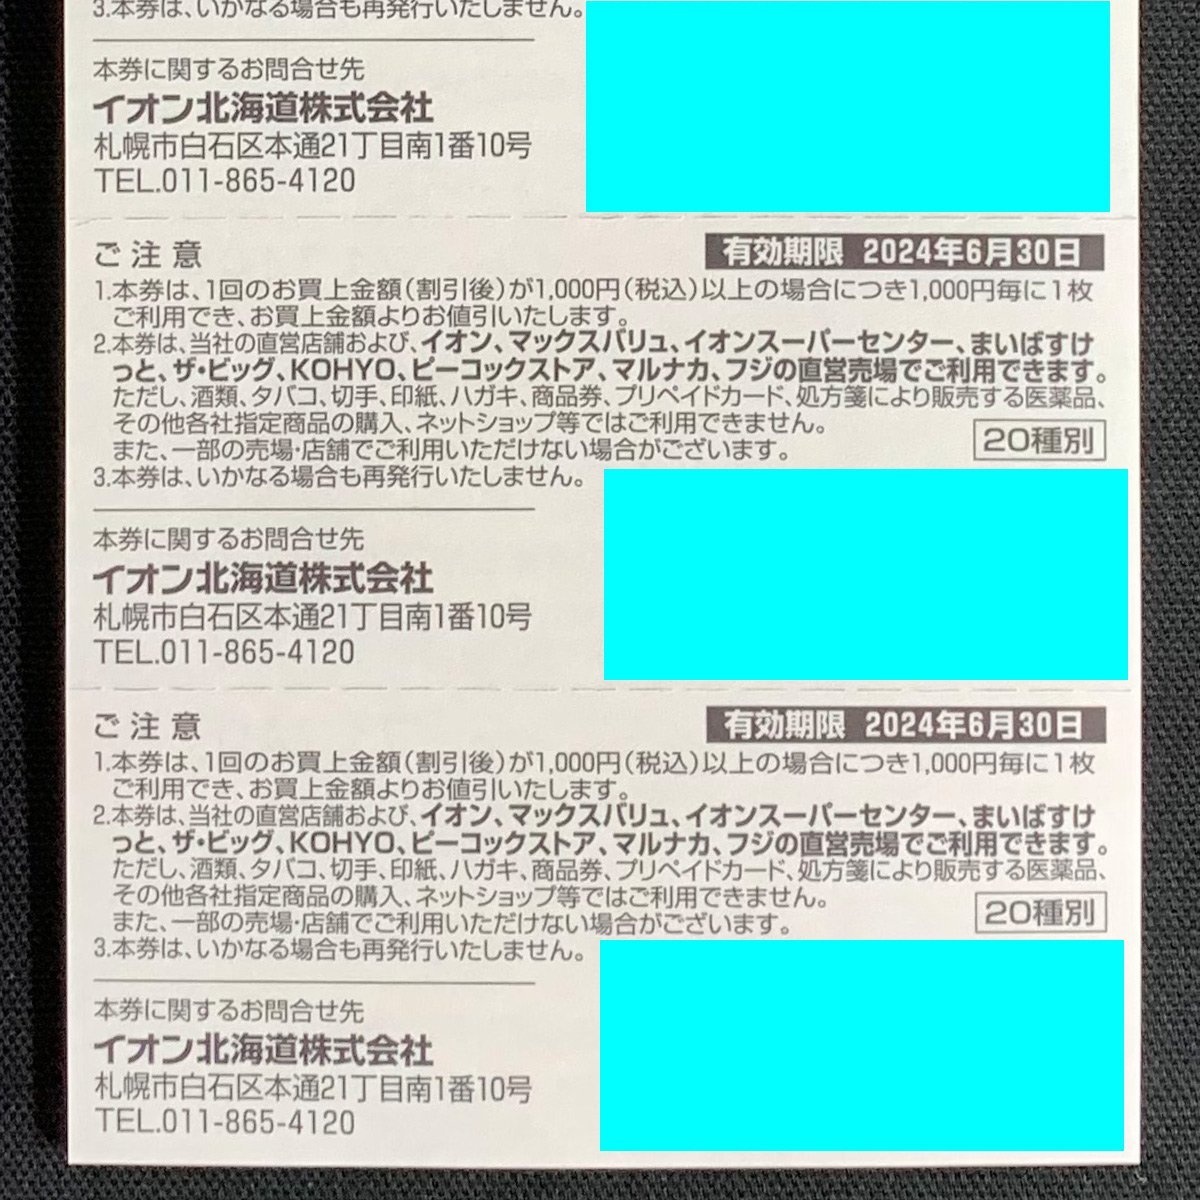 SU4o [送料無料] イオン北海道株式会社AEON 株主様ご優待券100枚綴り×1